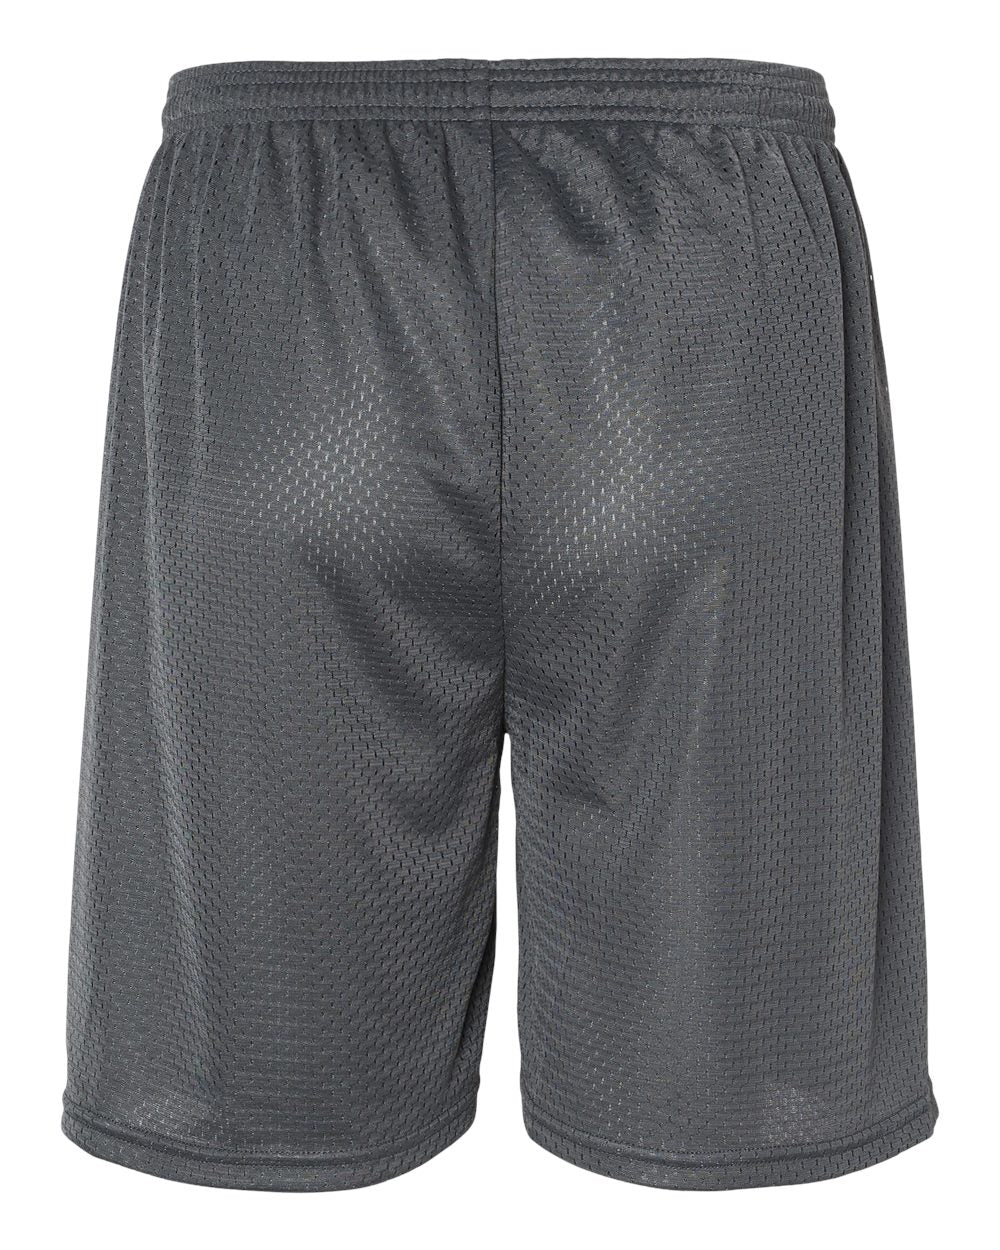 C2 Sport Mesh 7" Shorts 5107 #color_Graphite